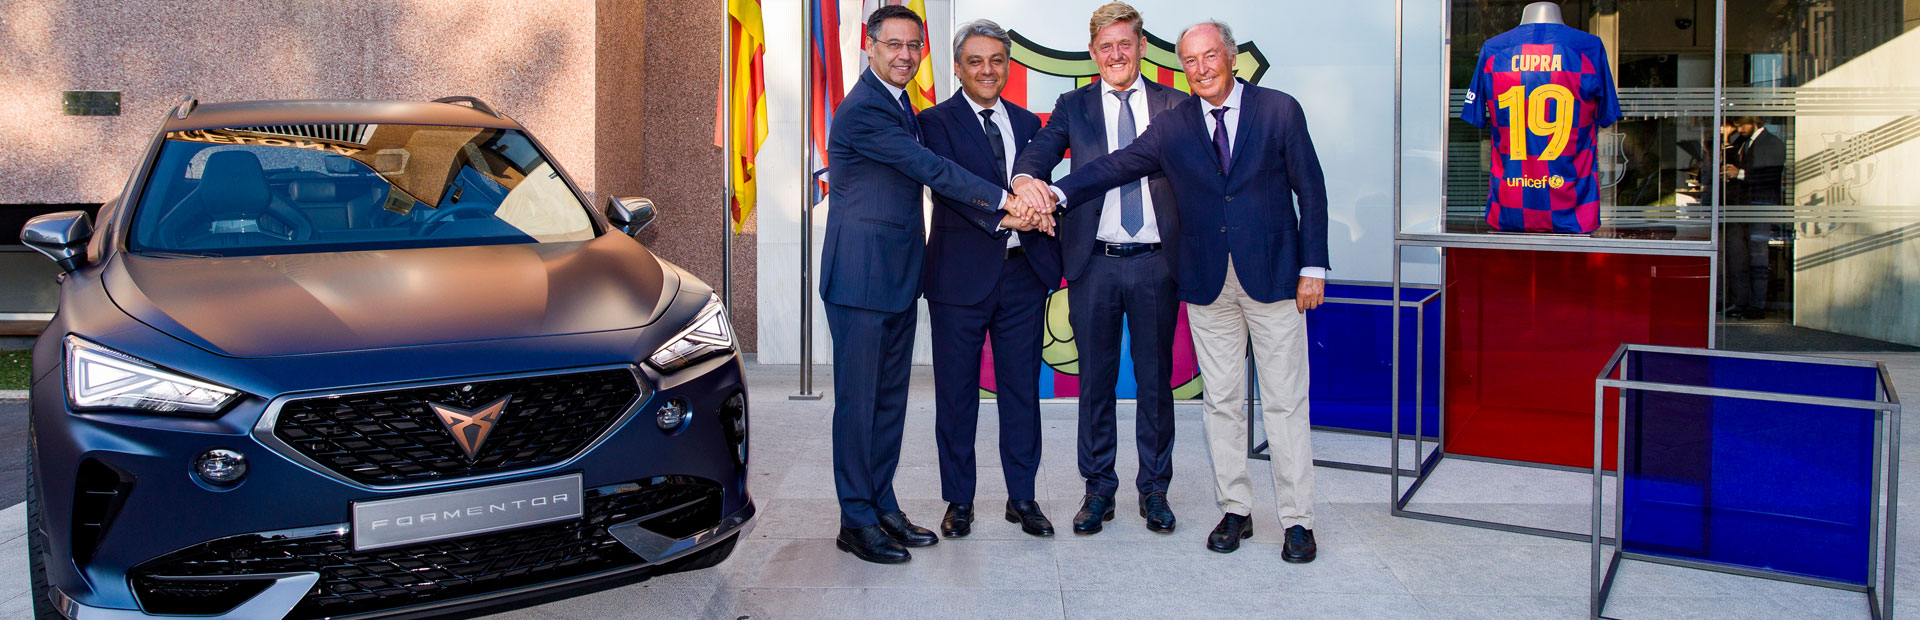 CUPRA i FC Barcelona łączą siły w globalnym sojuszu